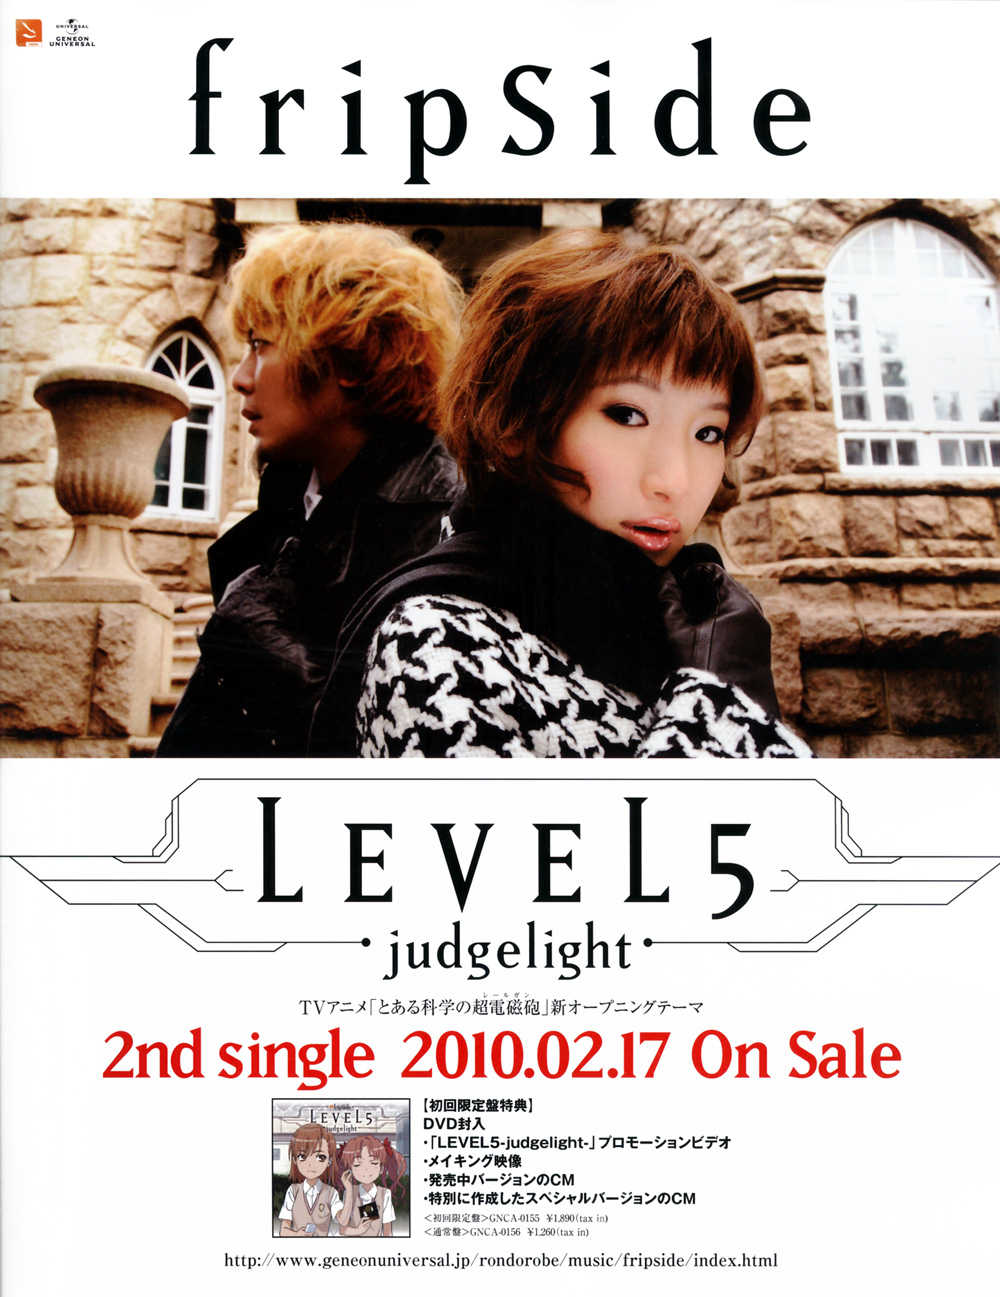 エターナル総書記 LEVEL5 Judgelight